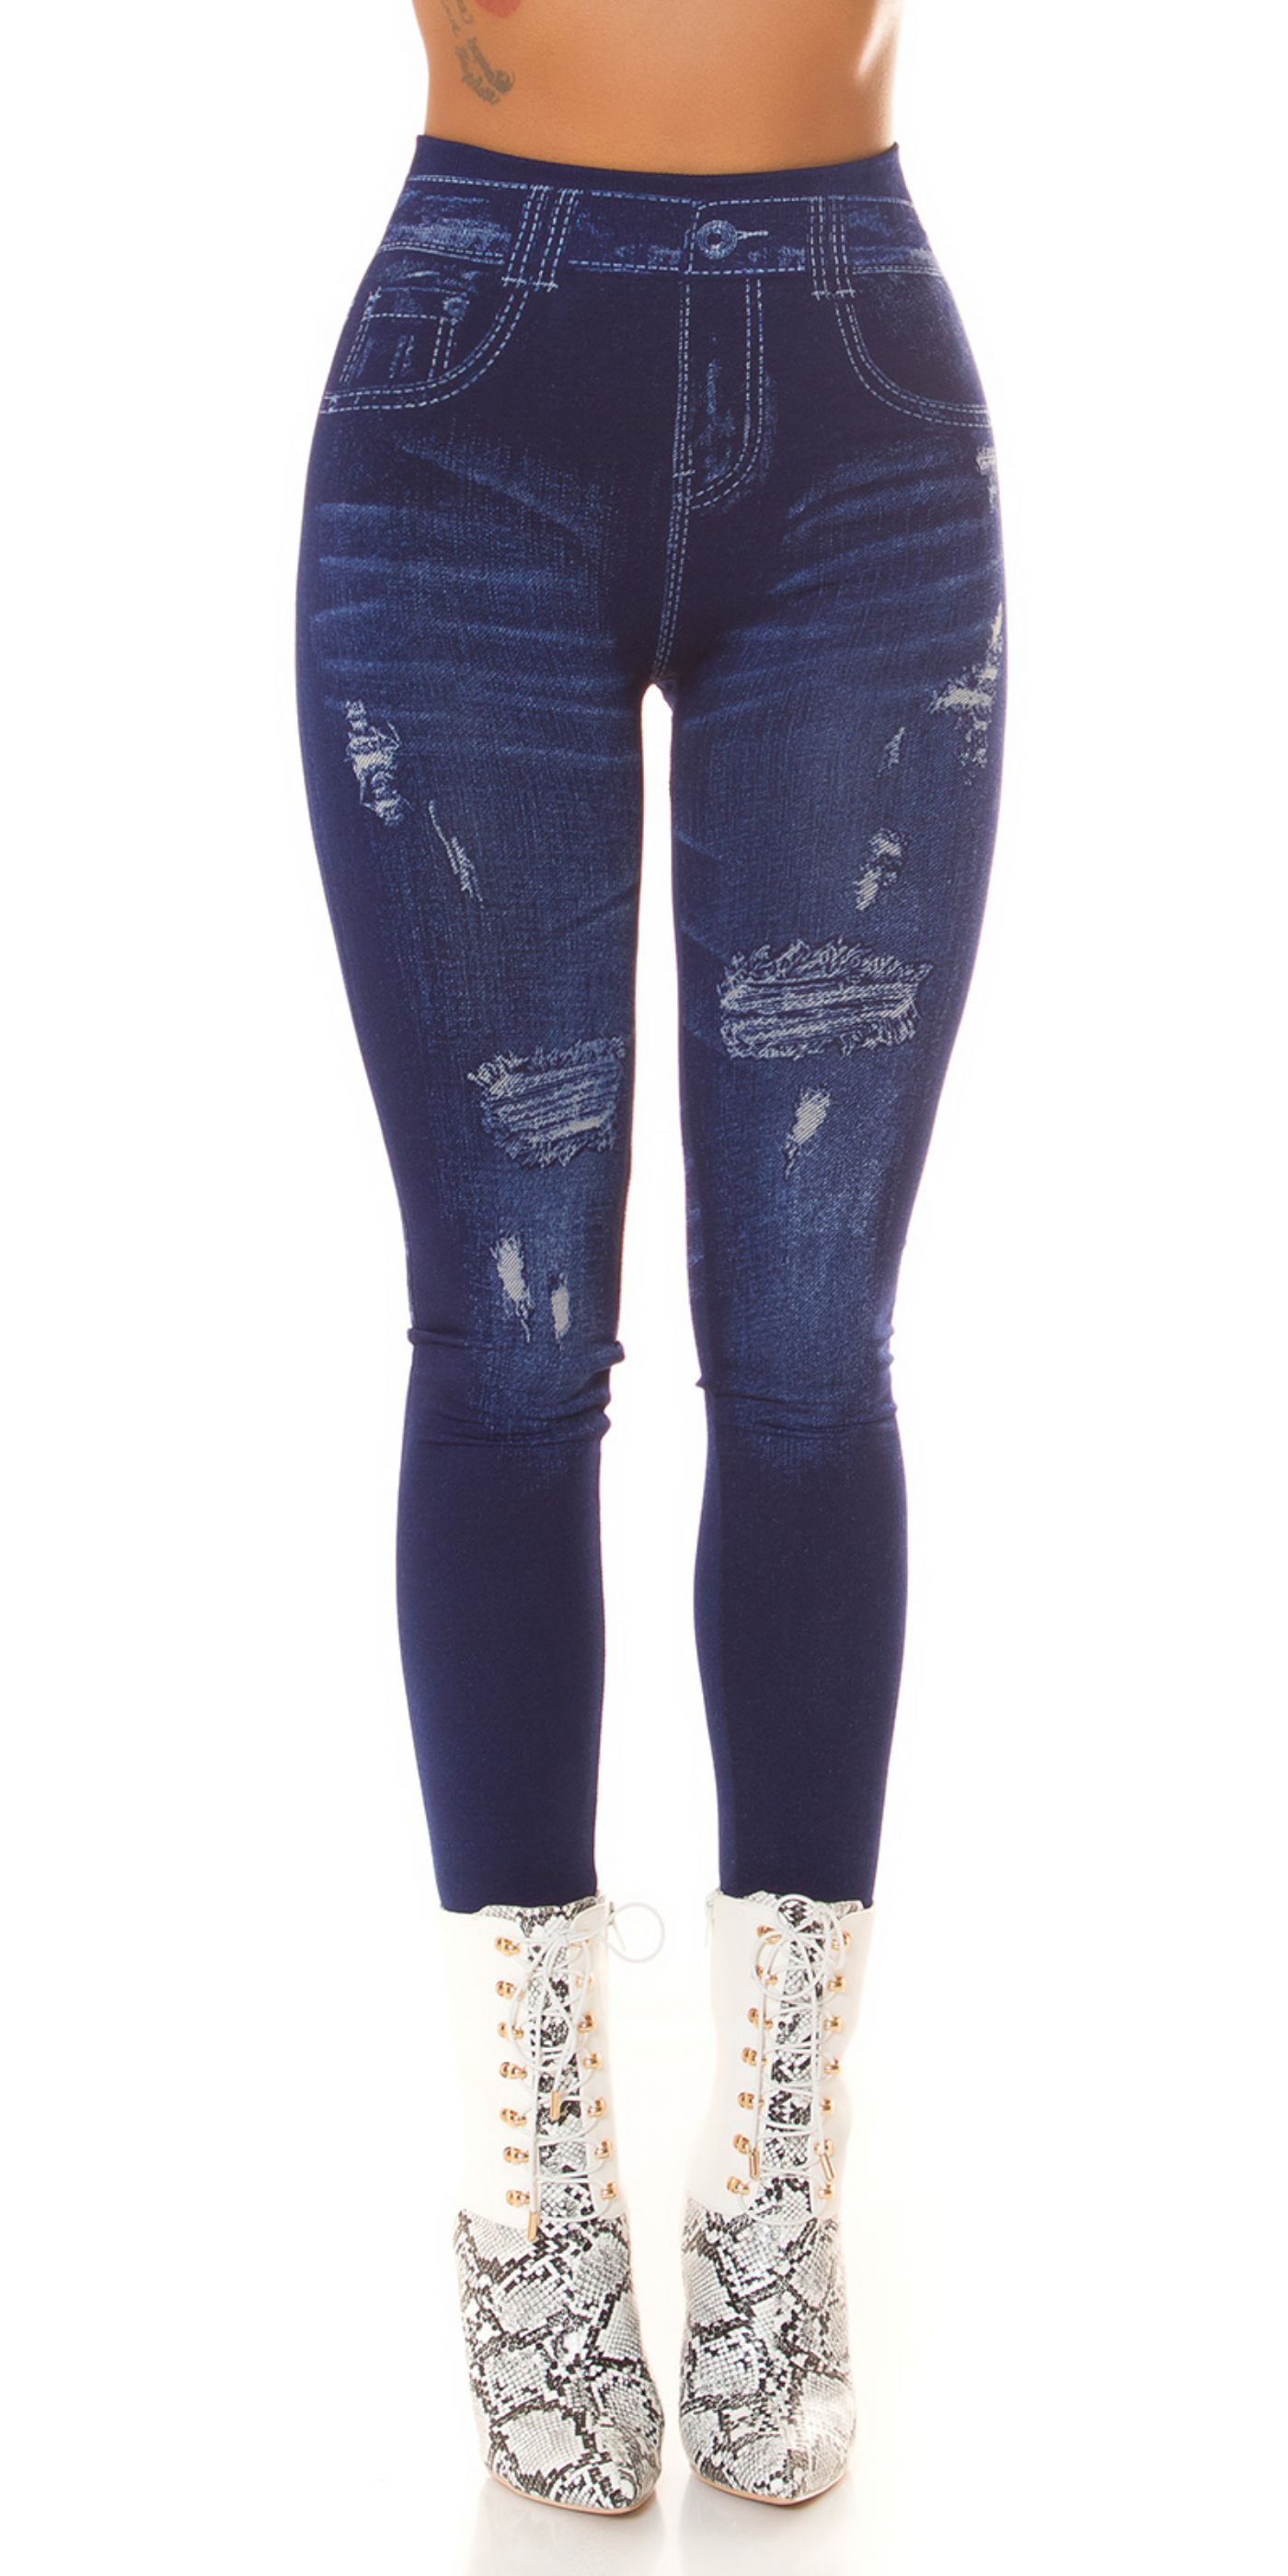 Jeans-look Leggings - bl